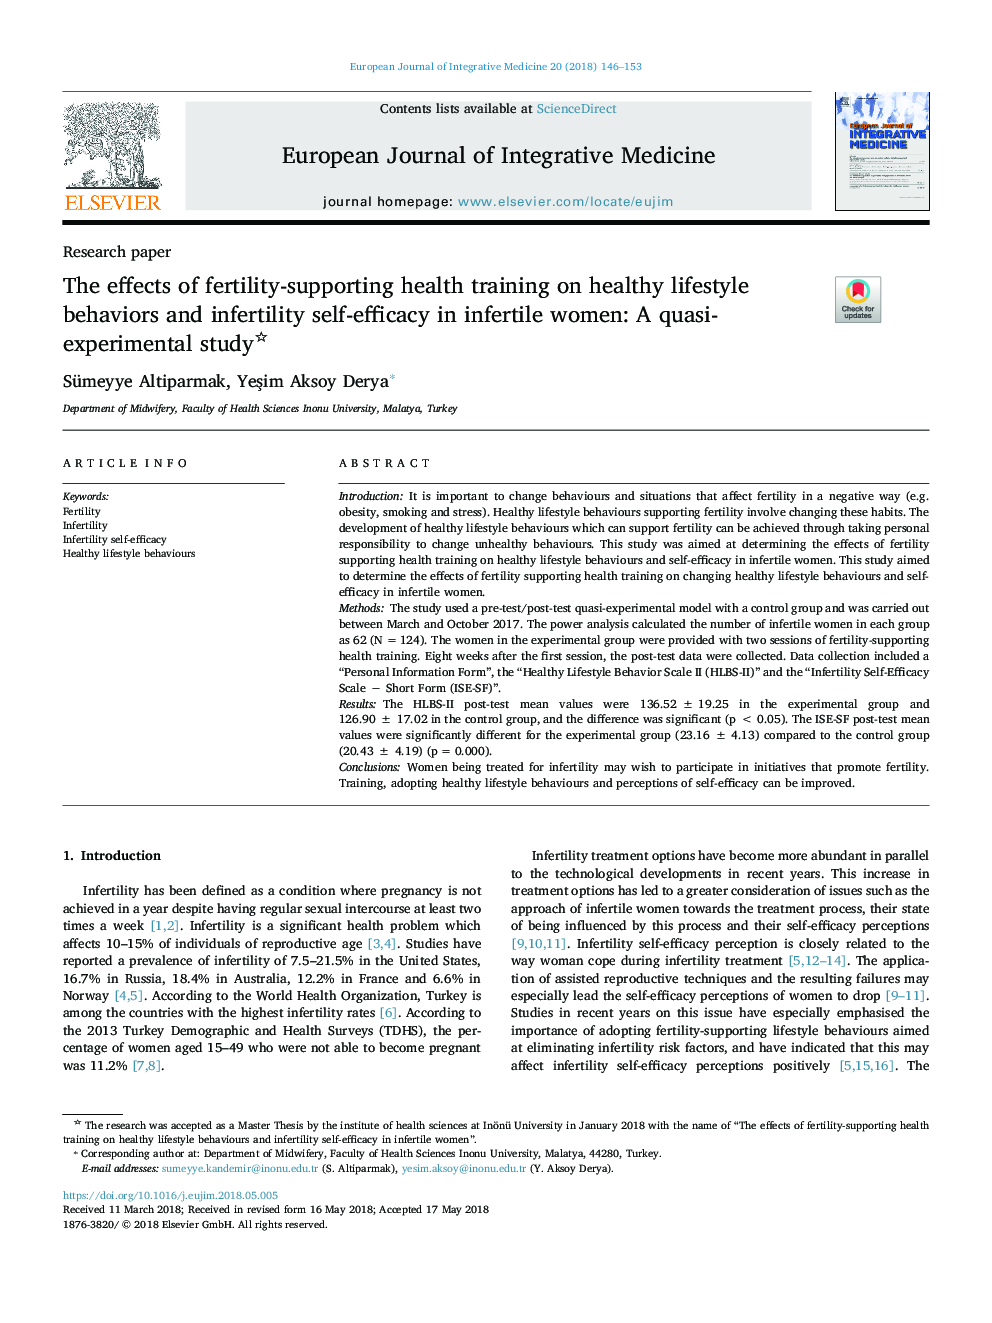 اثرات آموزش بهداشت باروری بر رفتارهای رفتاری سالم و خودکارآمدی ناباروری زنان نابارور: یک مطالعه شبه تجربی 